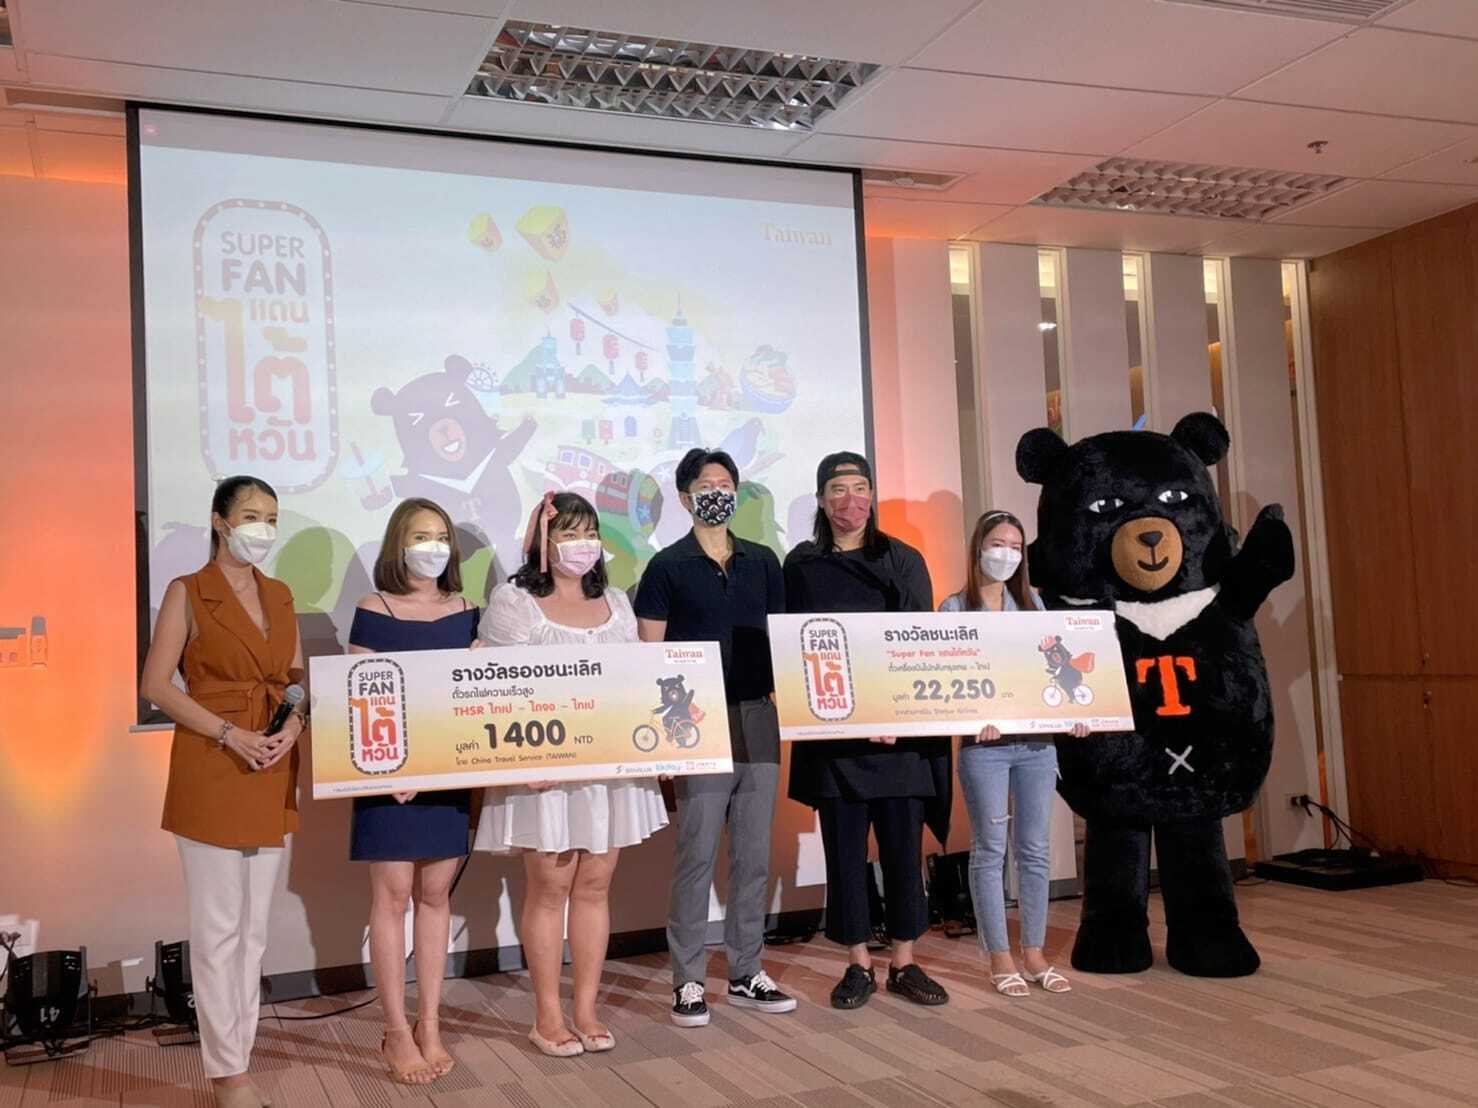 泰國「超級台灣迷」活動頒獎典禮 SUPER FAN of Taiwan Award ceremony in Thailand